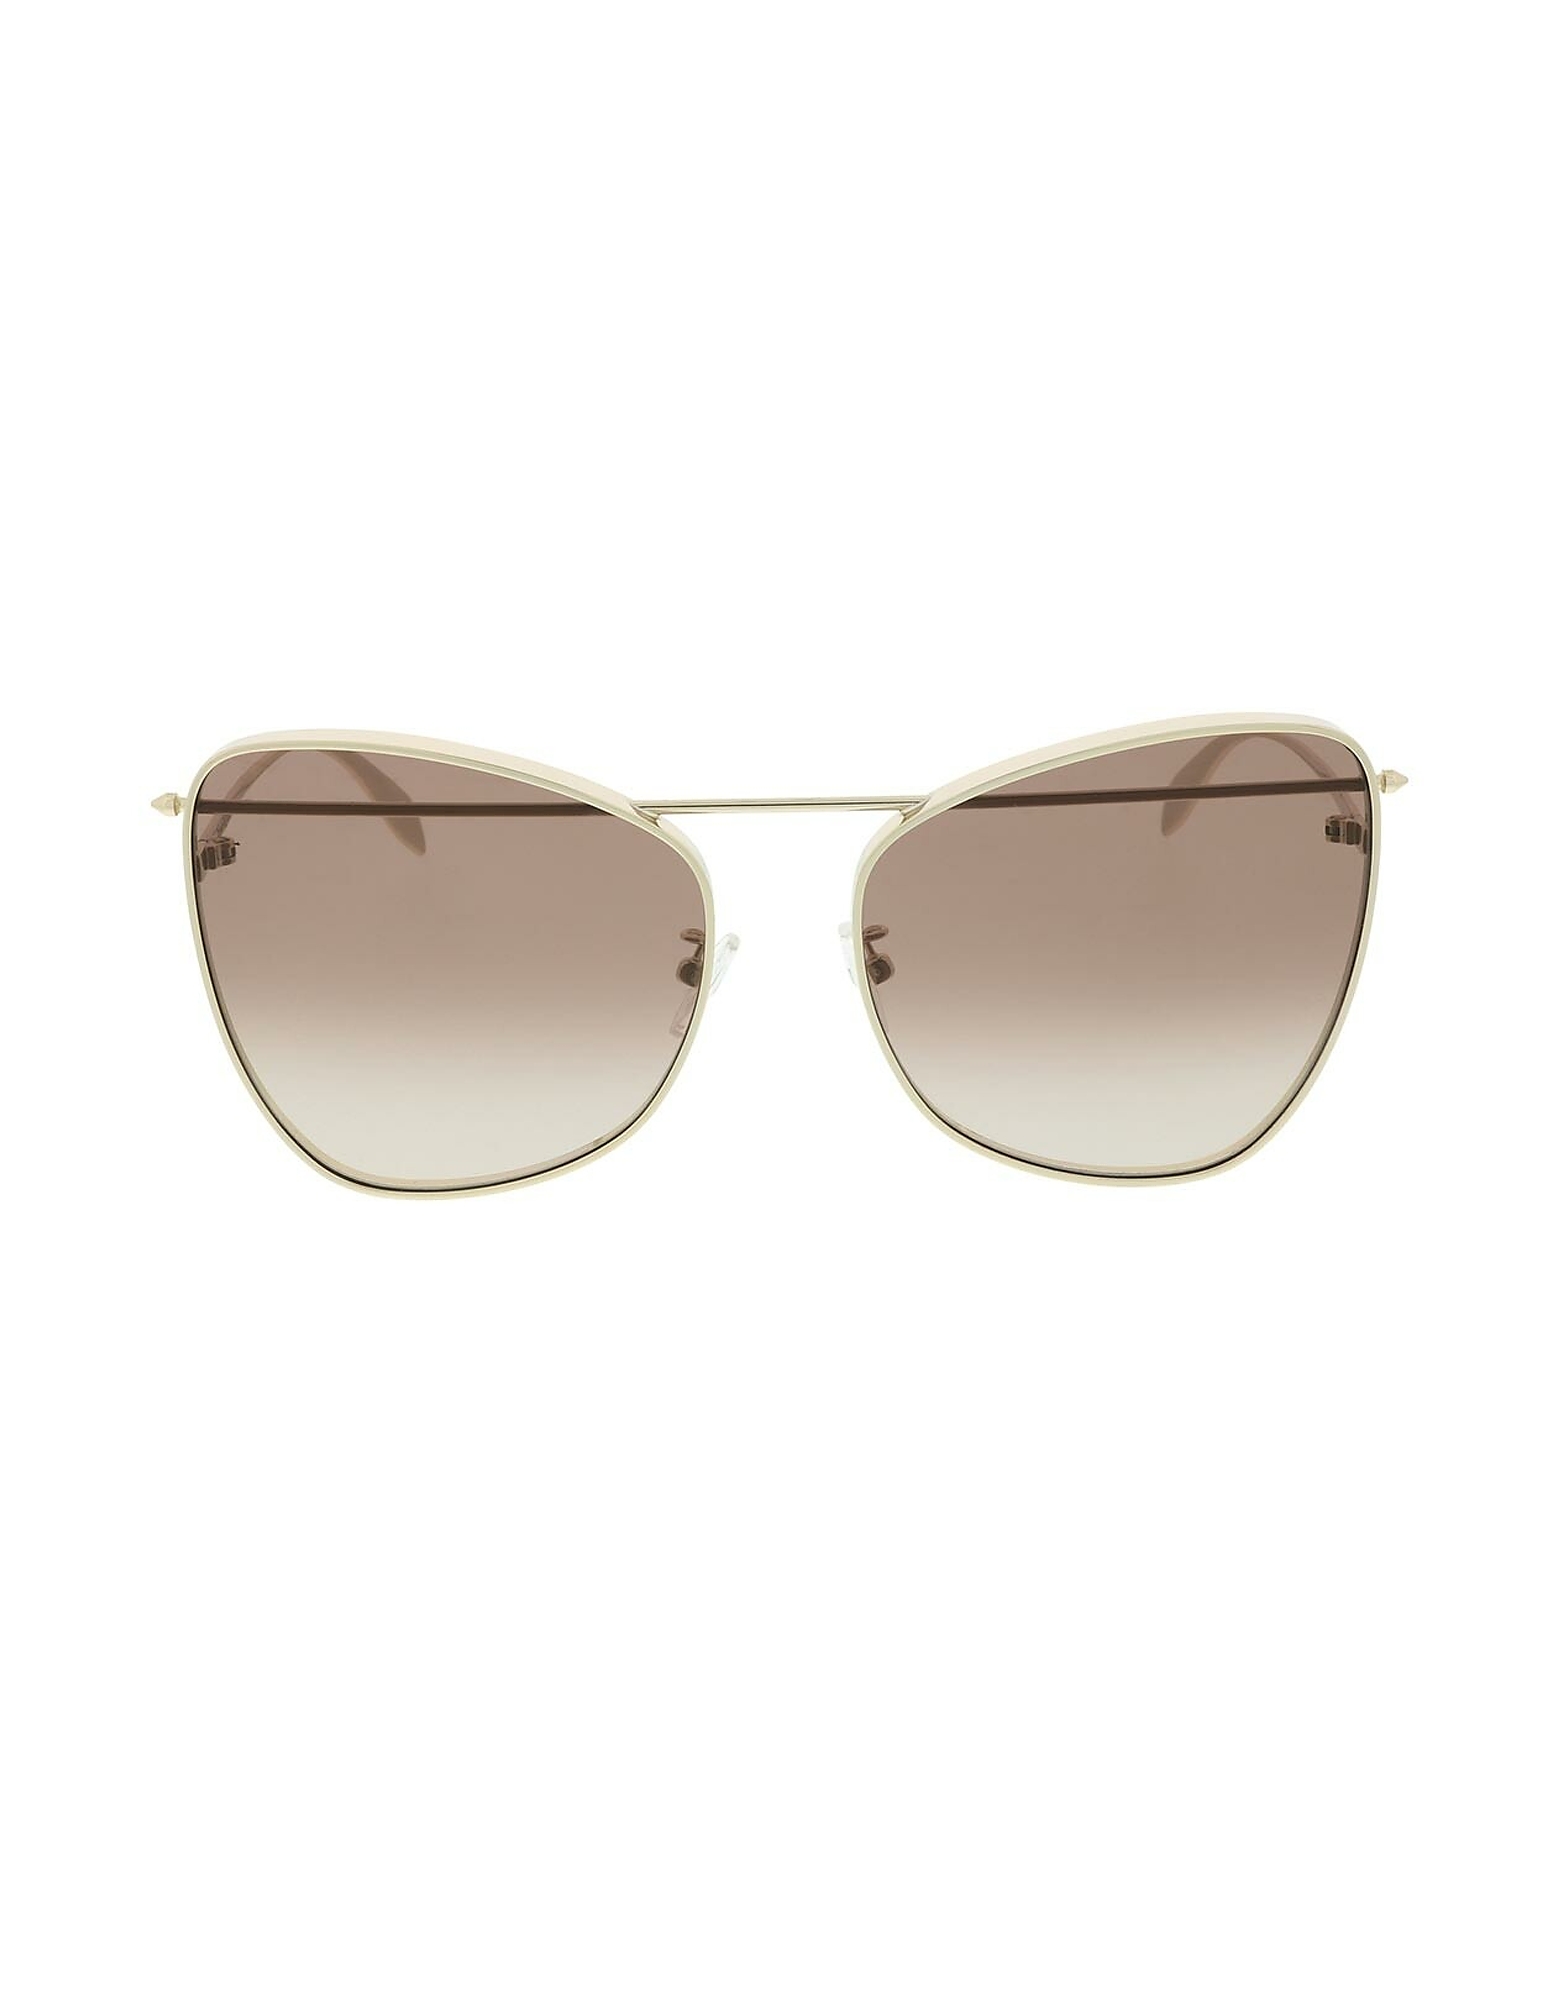 Alexander McQueen Sunglasses AM0228S Gold Metal Frame Oversized Women's Sunglasses